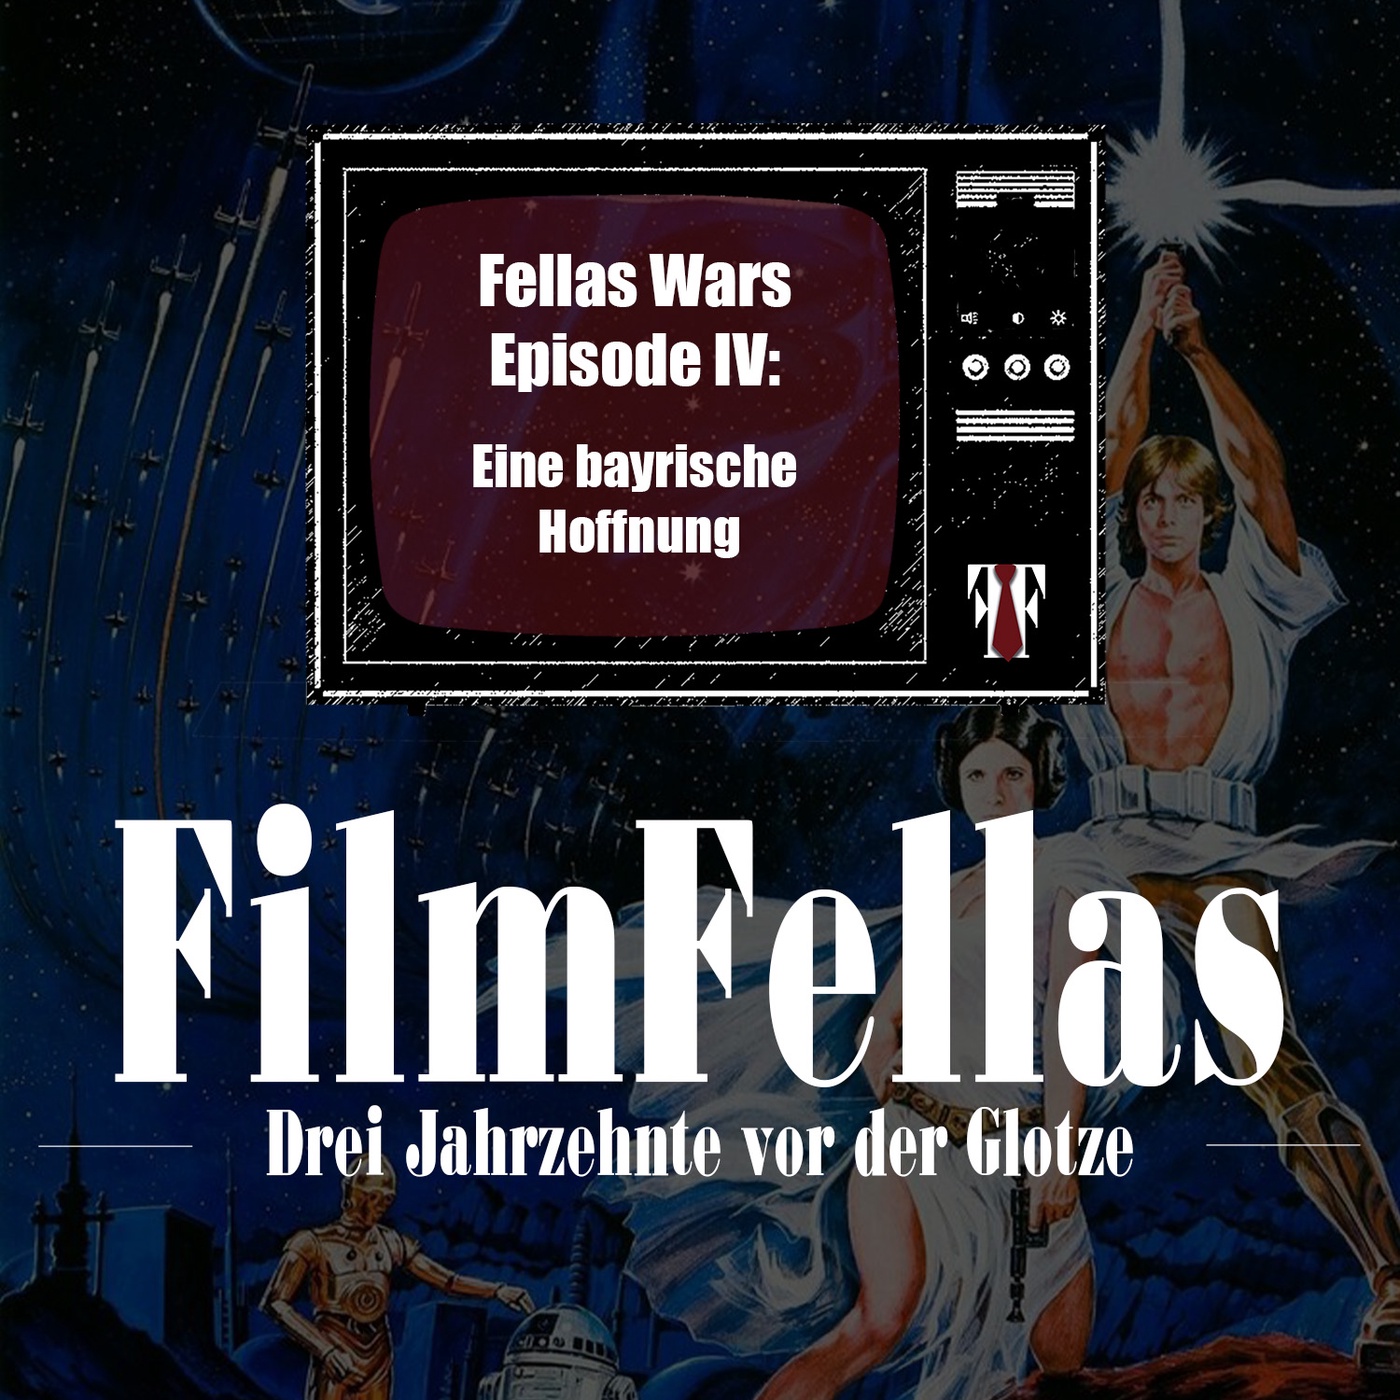 Fellas Wars Episode IV: Eine bayrische Hoffnung